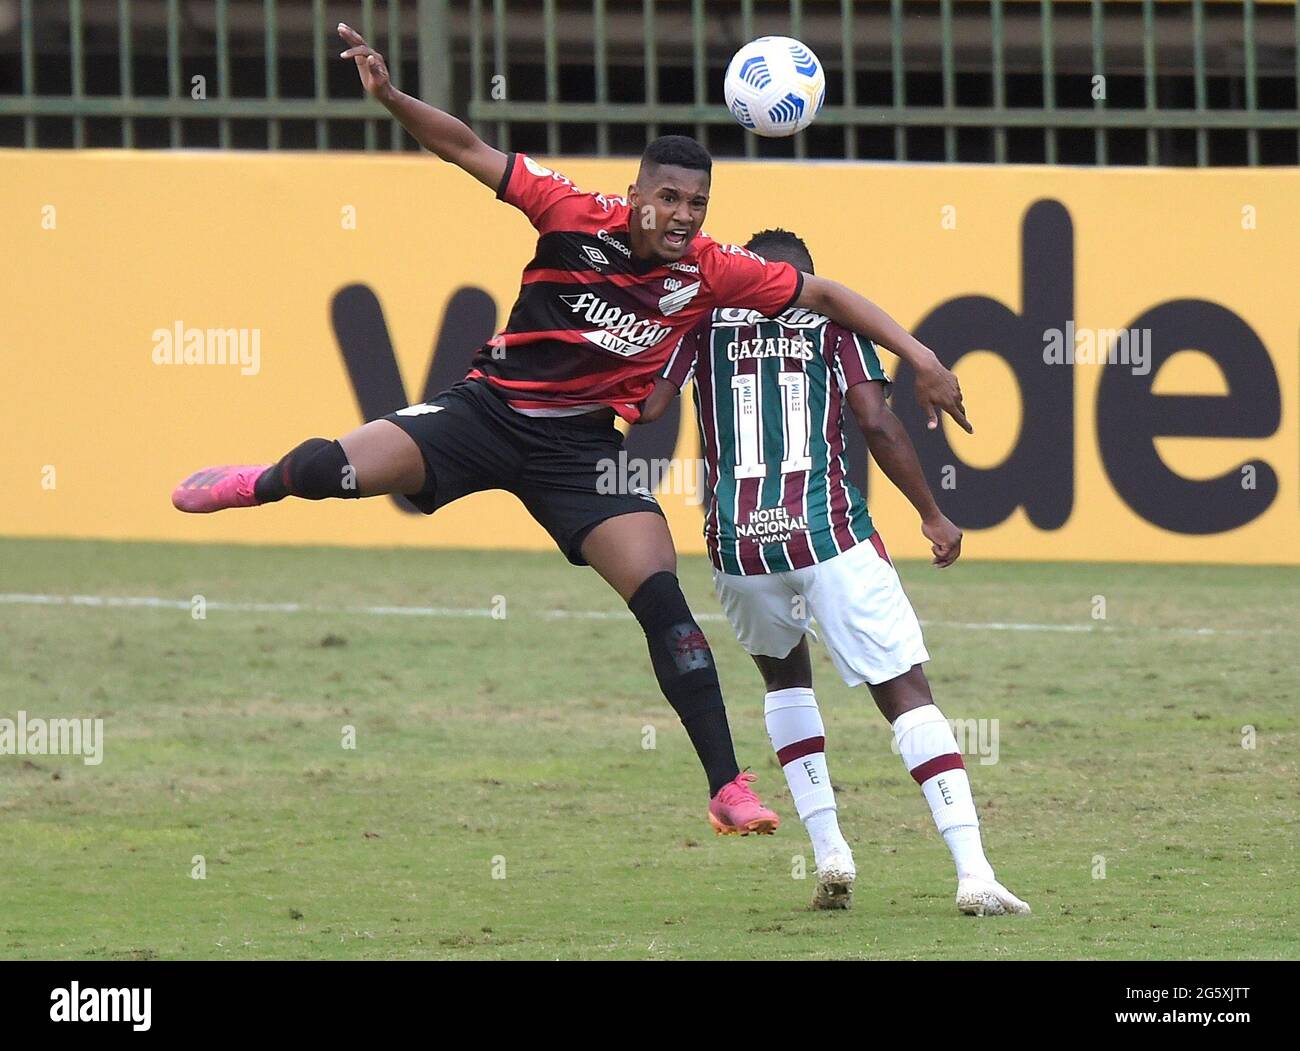 Calcio - Campionato Brasileiro - Fluminense v Atletico Paranaense - Stade  Raulino de Oliveira, volta Redonda, Brasile - 30 giugno